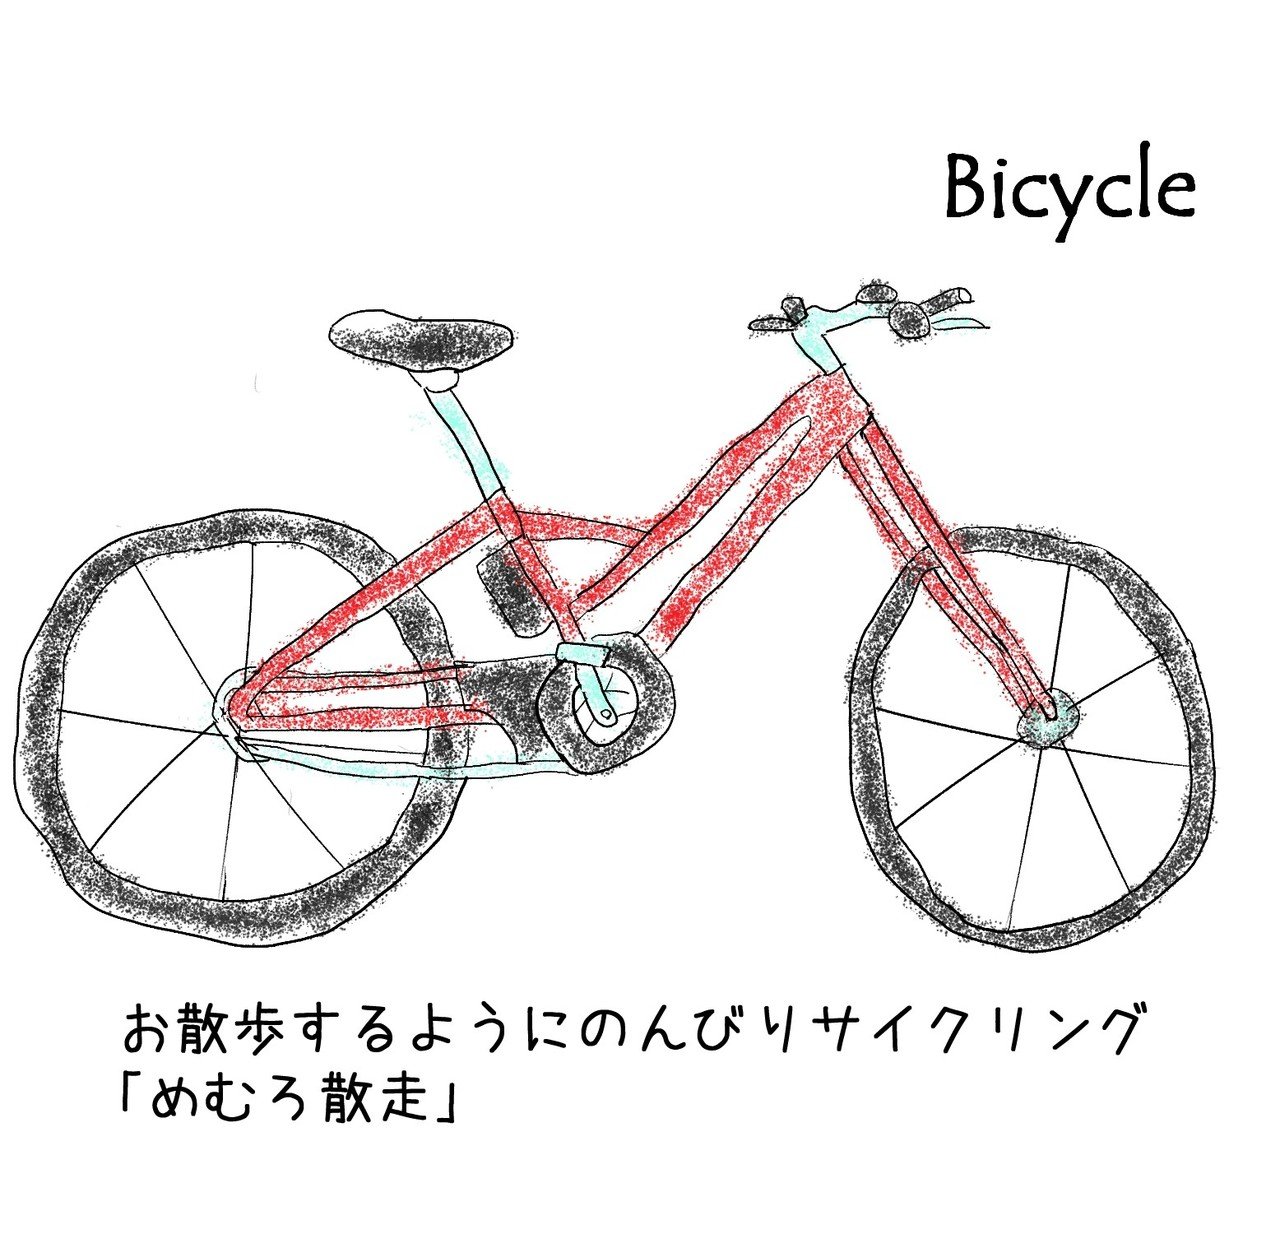 3.自転車